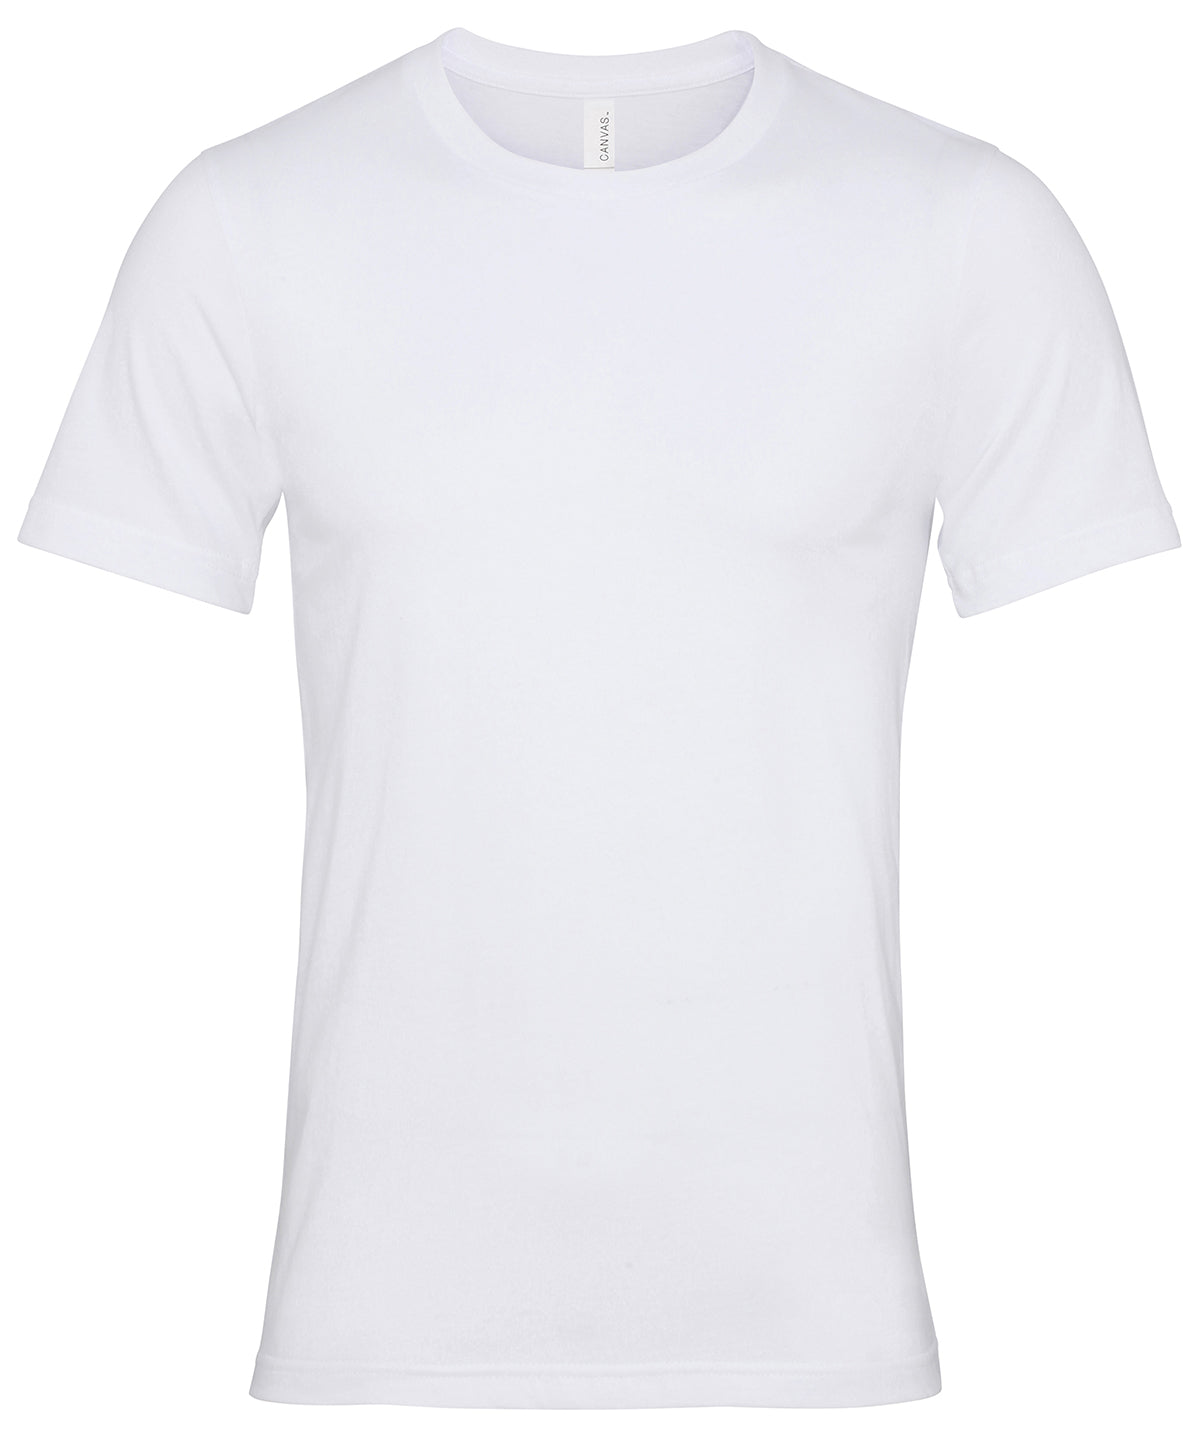 Bella Canvas Unisex Jersey crew neck t-shirt White